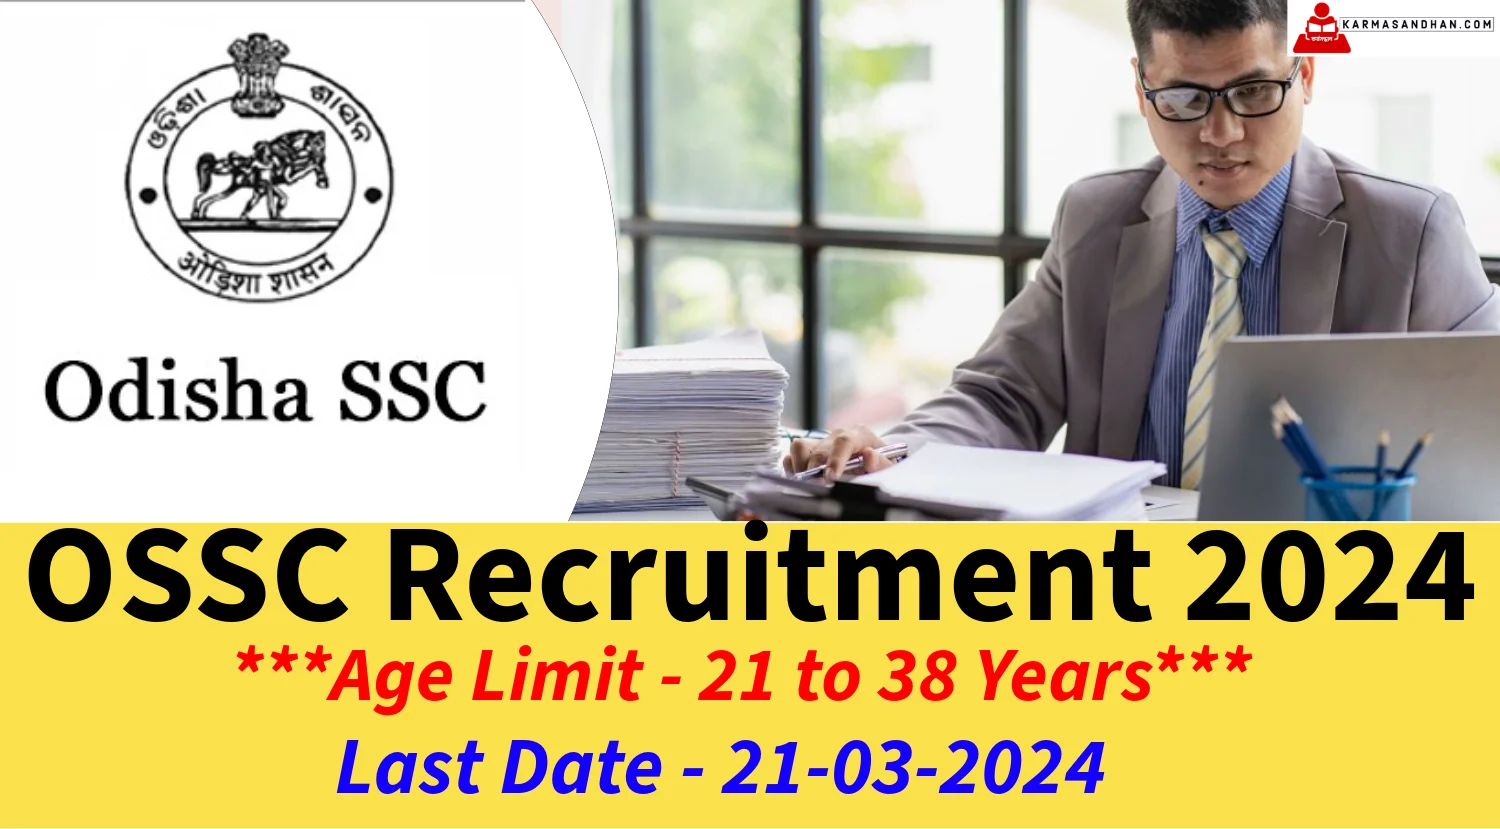 OSSC Recruitment 2024 Notification for Technician Posts